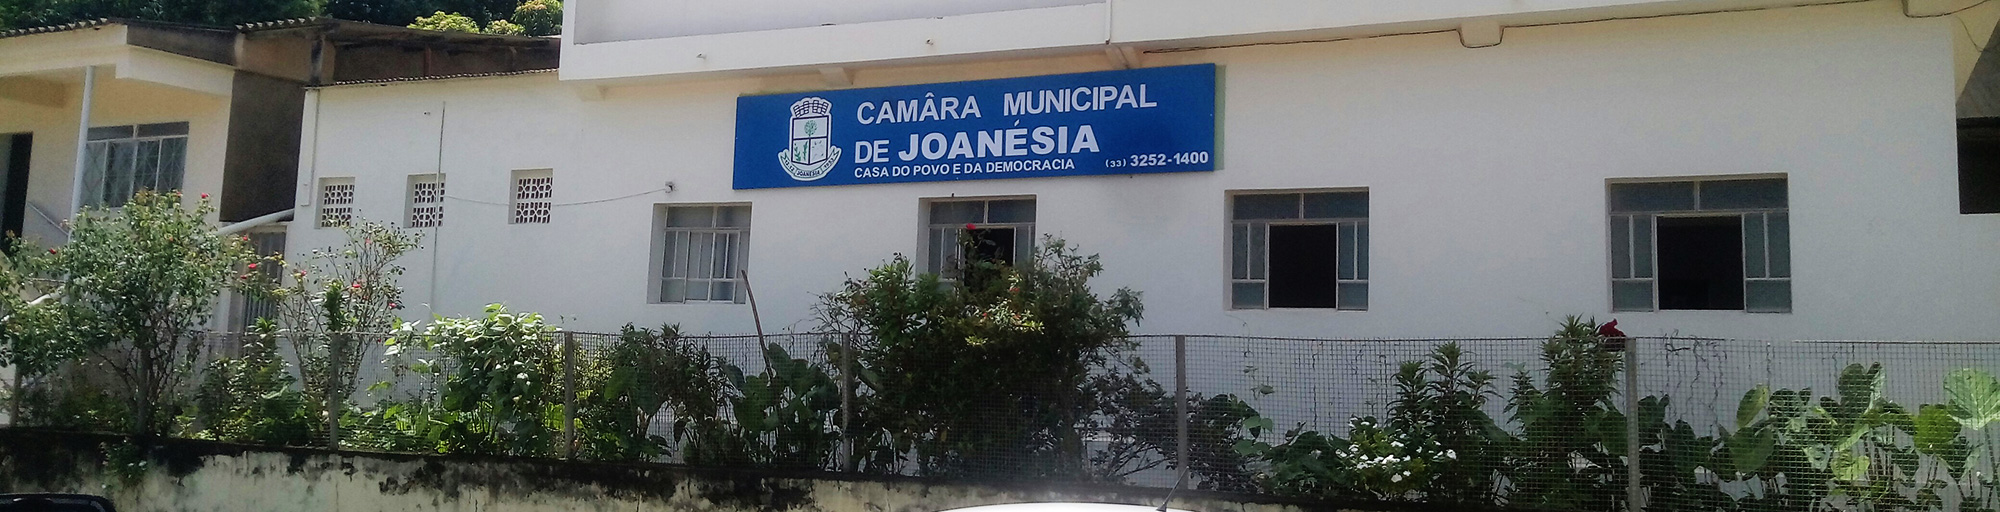 Foto da Câmara Municipal de Joanésia